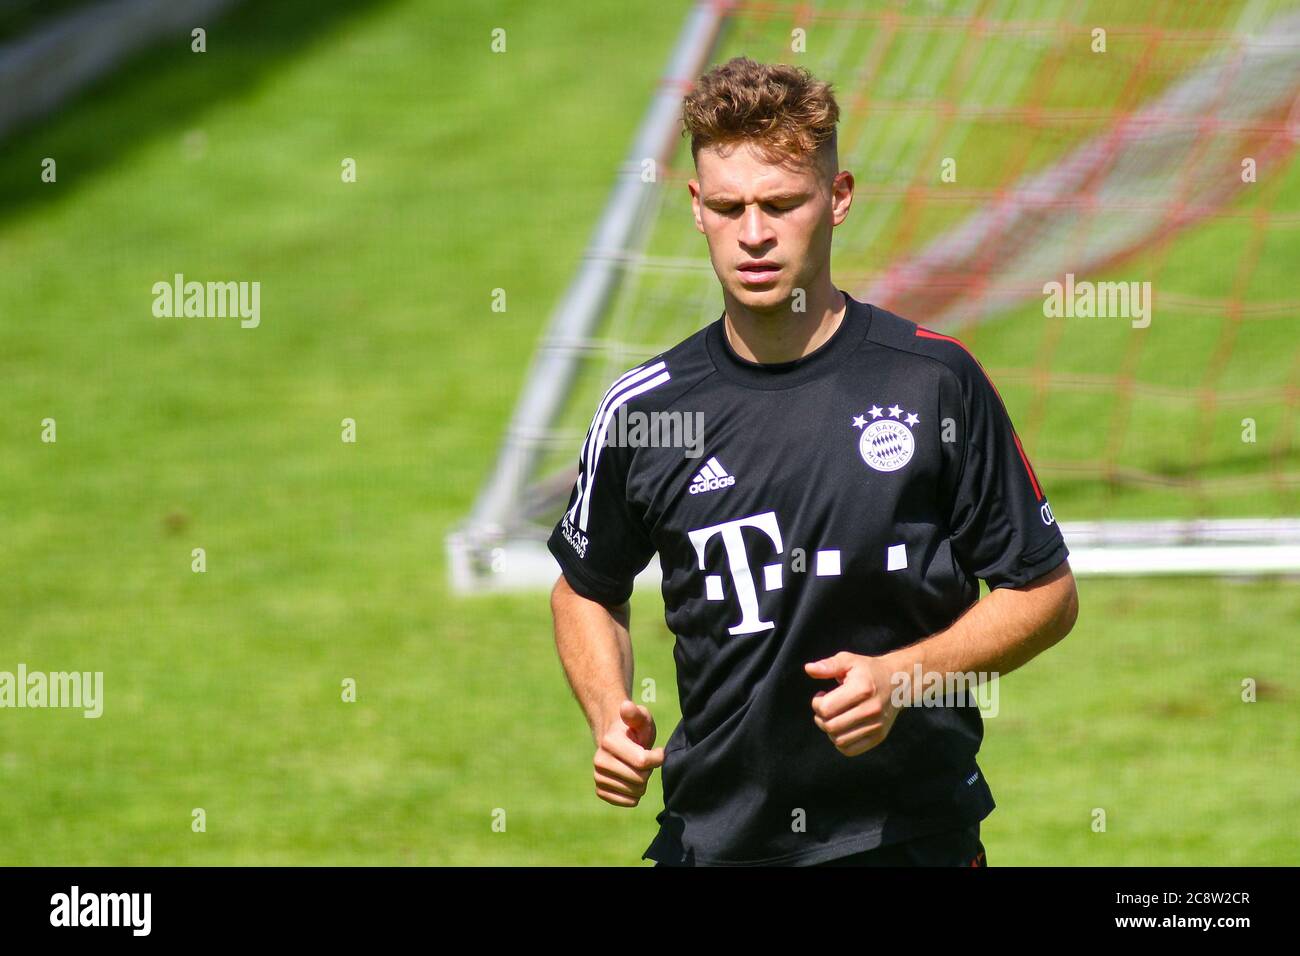 Muenchen, Germany July 25, 2020: 1st BL - 20/21 - FC Bayern Munich Training July 25, 2020 Joshua Kimmich (FC Bayern Munich), action / single image / | usage worldwide Stock Photo